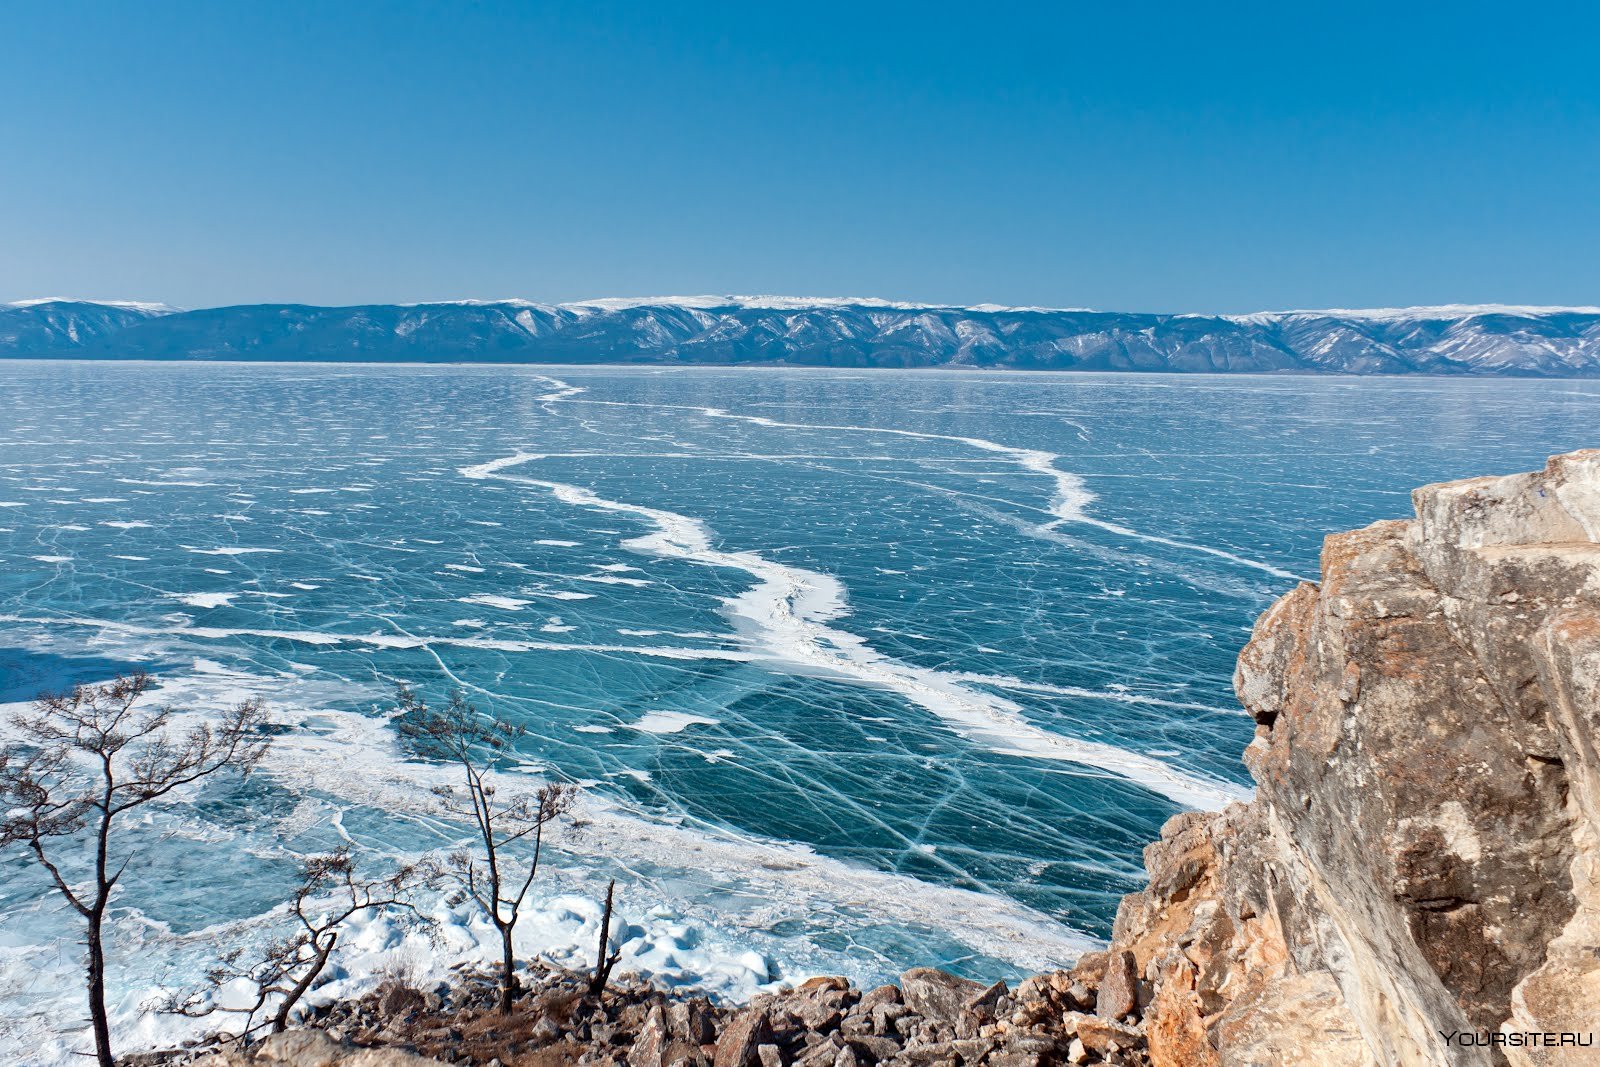 Байкал гигантское озеро его называют сибирским морем